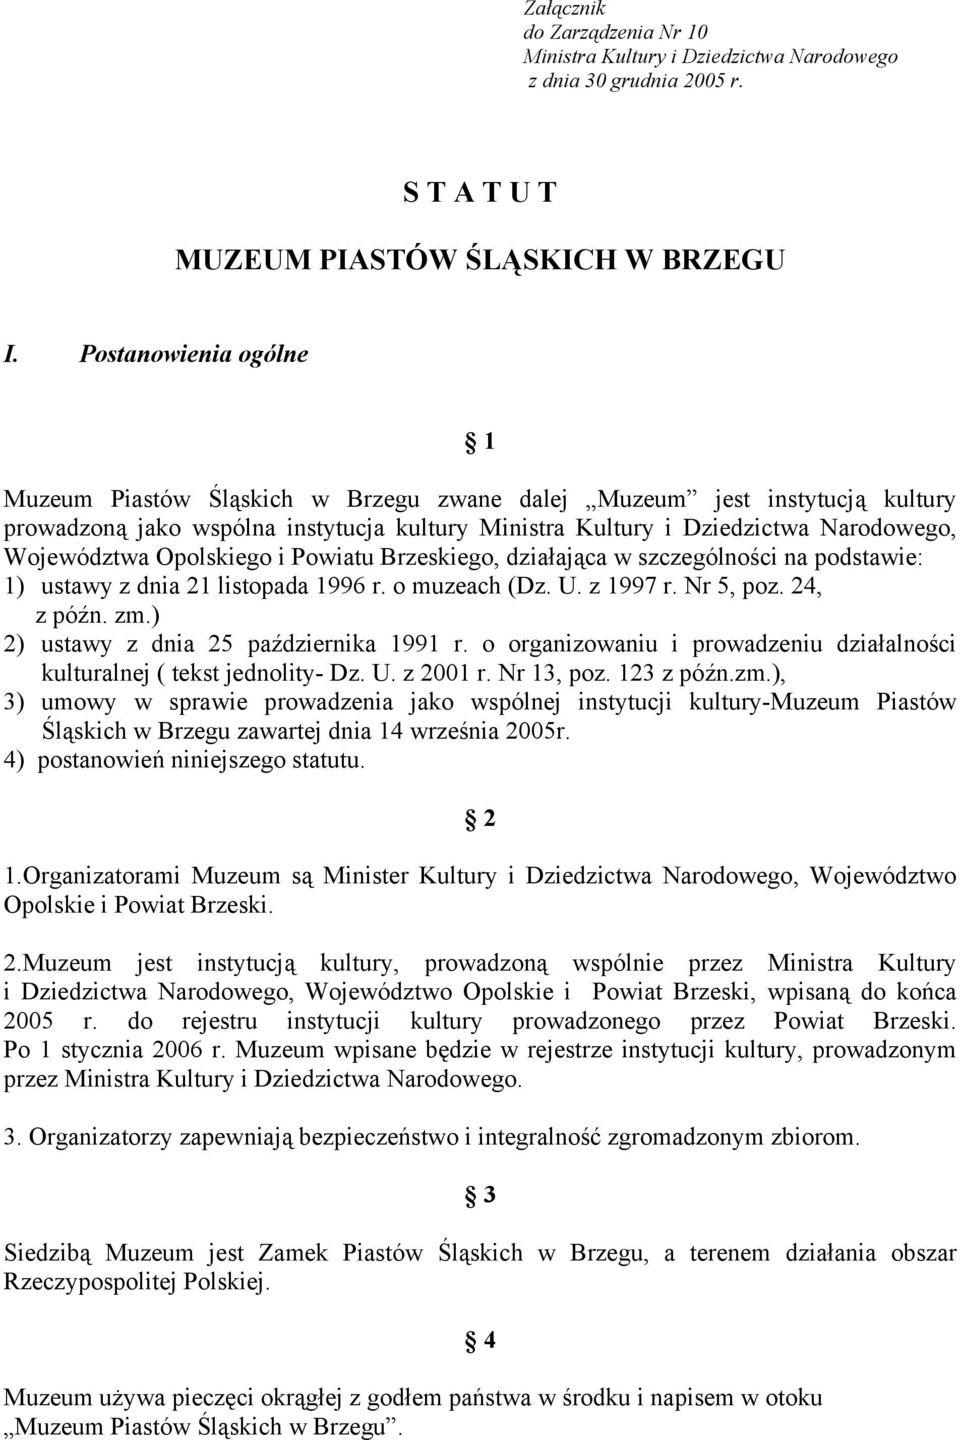 Opolskiego i Powiatu Brzeskiego, działająca w szczególności na podstawie: 1) ustawy z dnia 21 listopada 1996 r. o muzeach (Dz. U. z 1997 r. Nr 5, poz. 24, z późn. zm.